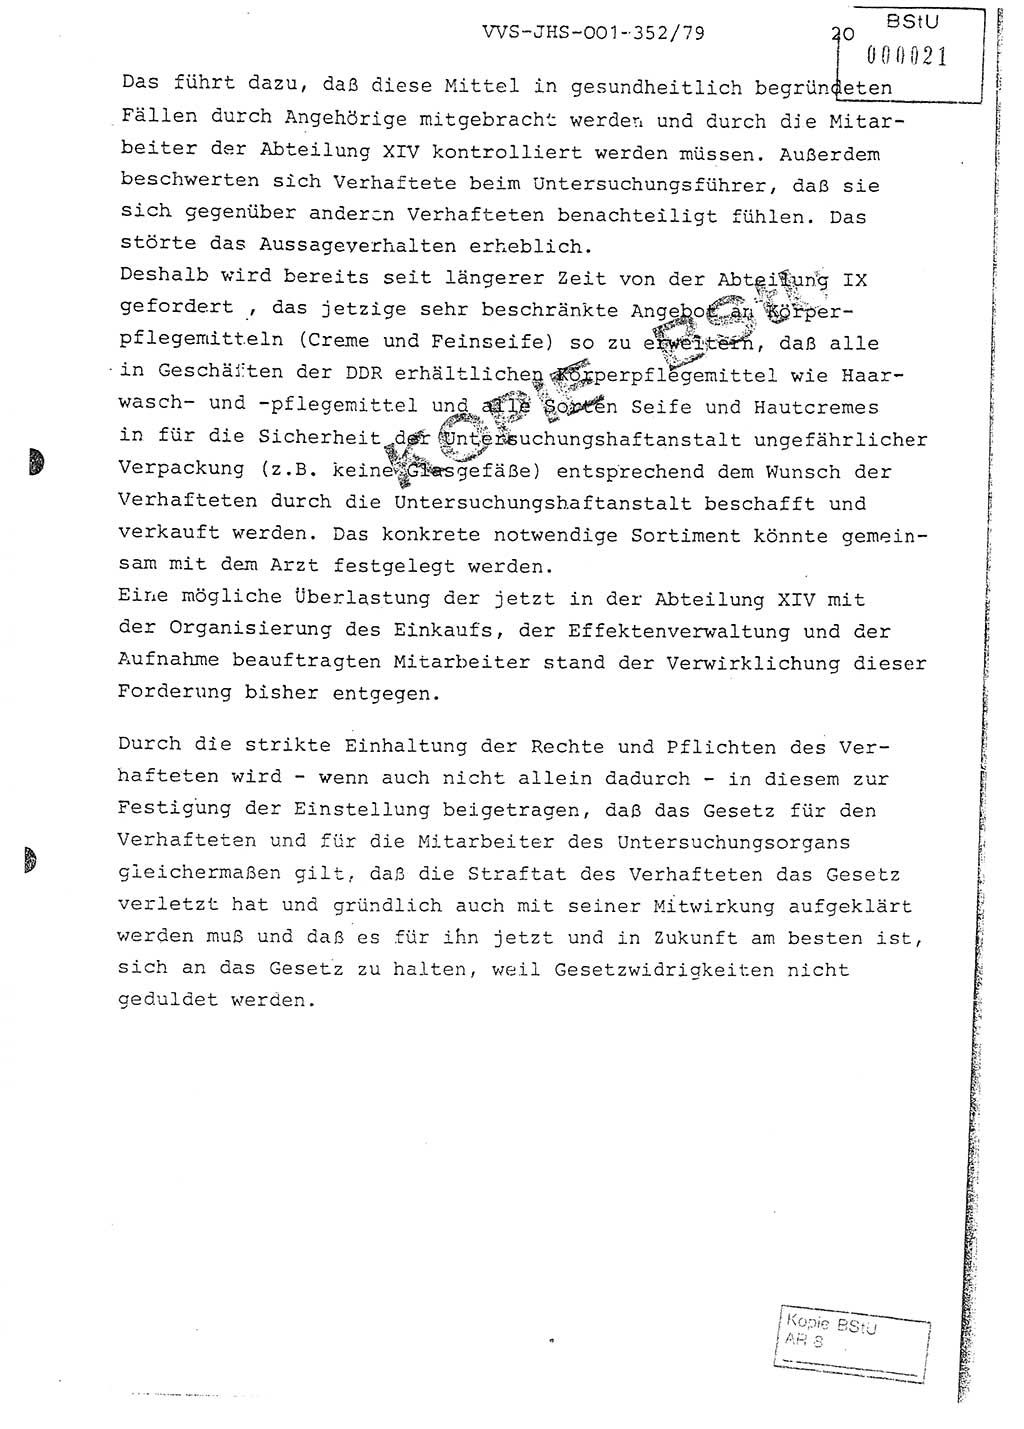 Diplomarbeit Hauptmann Peter Wittum (BV Bln. Abt. HA Ⅸ), Ministerium für Staatssicherheit (MfS) [Deutsche Demokratische Republik (DDR)], Juristische Hochschule (JHS), Vertrauliche Verschlußsache (VVS) o001-352/79, Potsdam 1979, Seite 20 (Dipl.-Arb. MfS DDR JHS VVS o001-352/79 1979, S. 20)